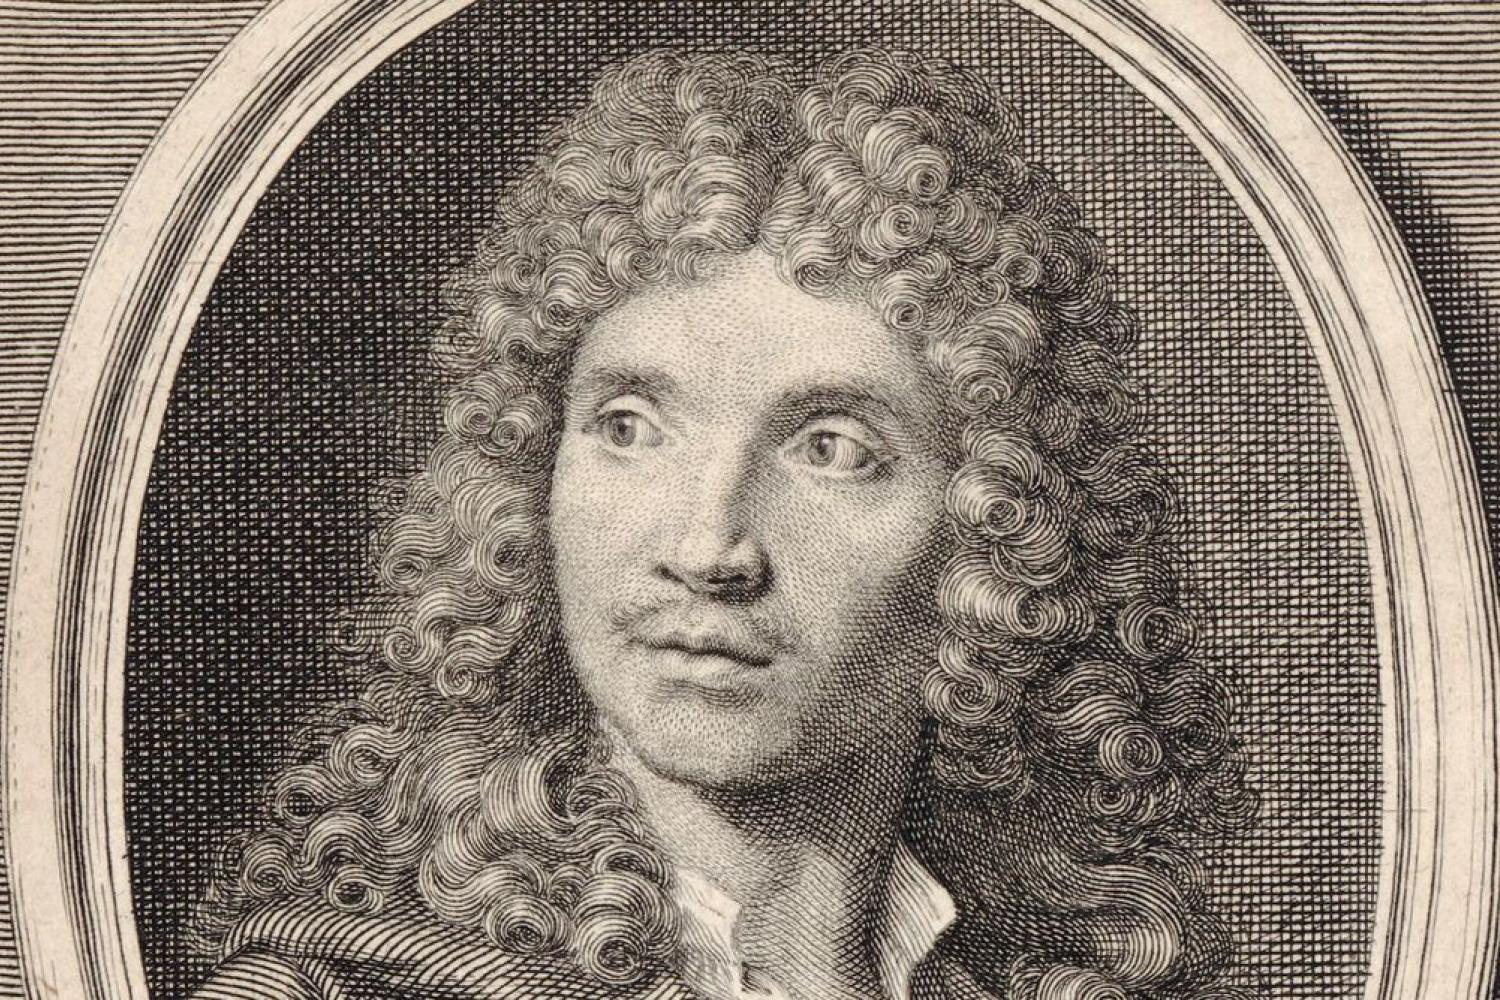 Portrait de J. B. Poquelin de Molière, gravure de Benoît Audran. BnF, département Estampes et photographie -  - BnF